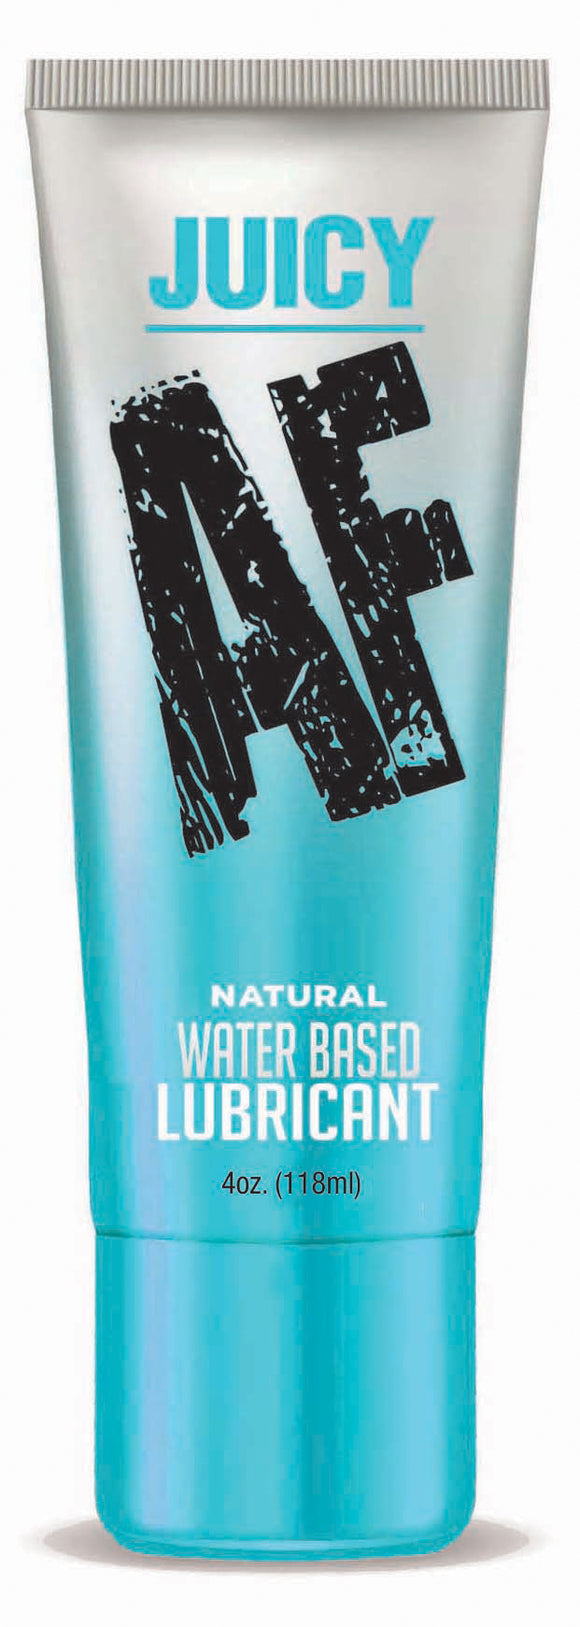 Juicy Af - Natural Water Based Lubricant - 4oz LG-BT620